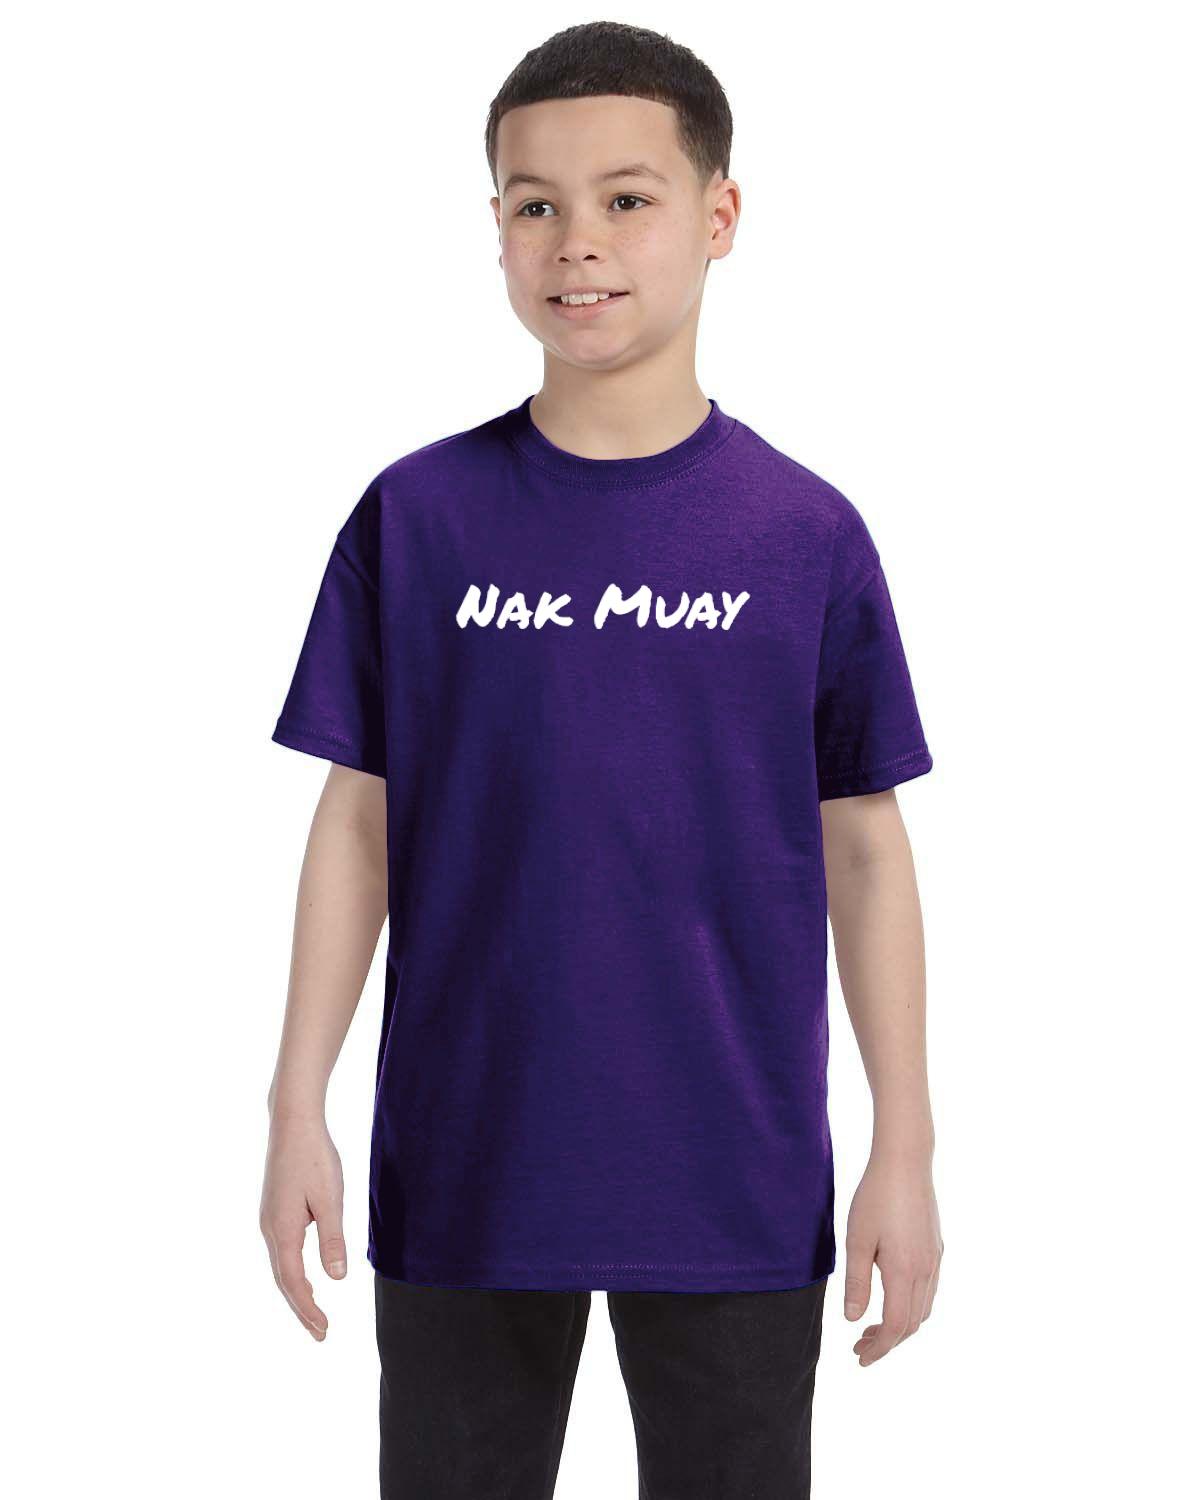 Nak Muay Kid's T-Shirt